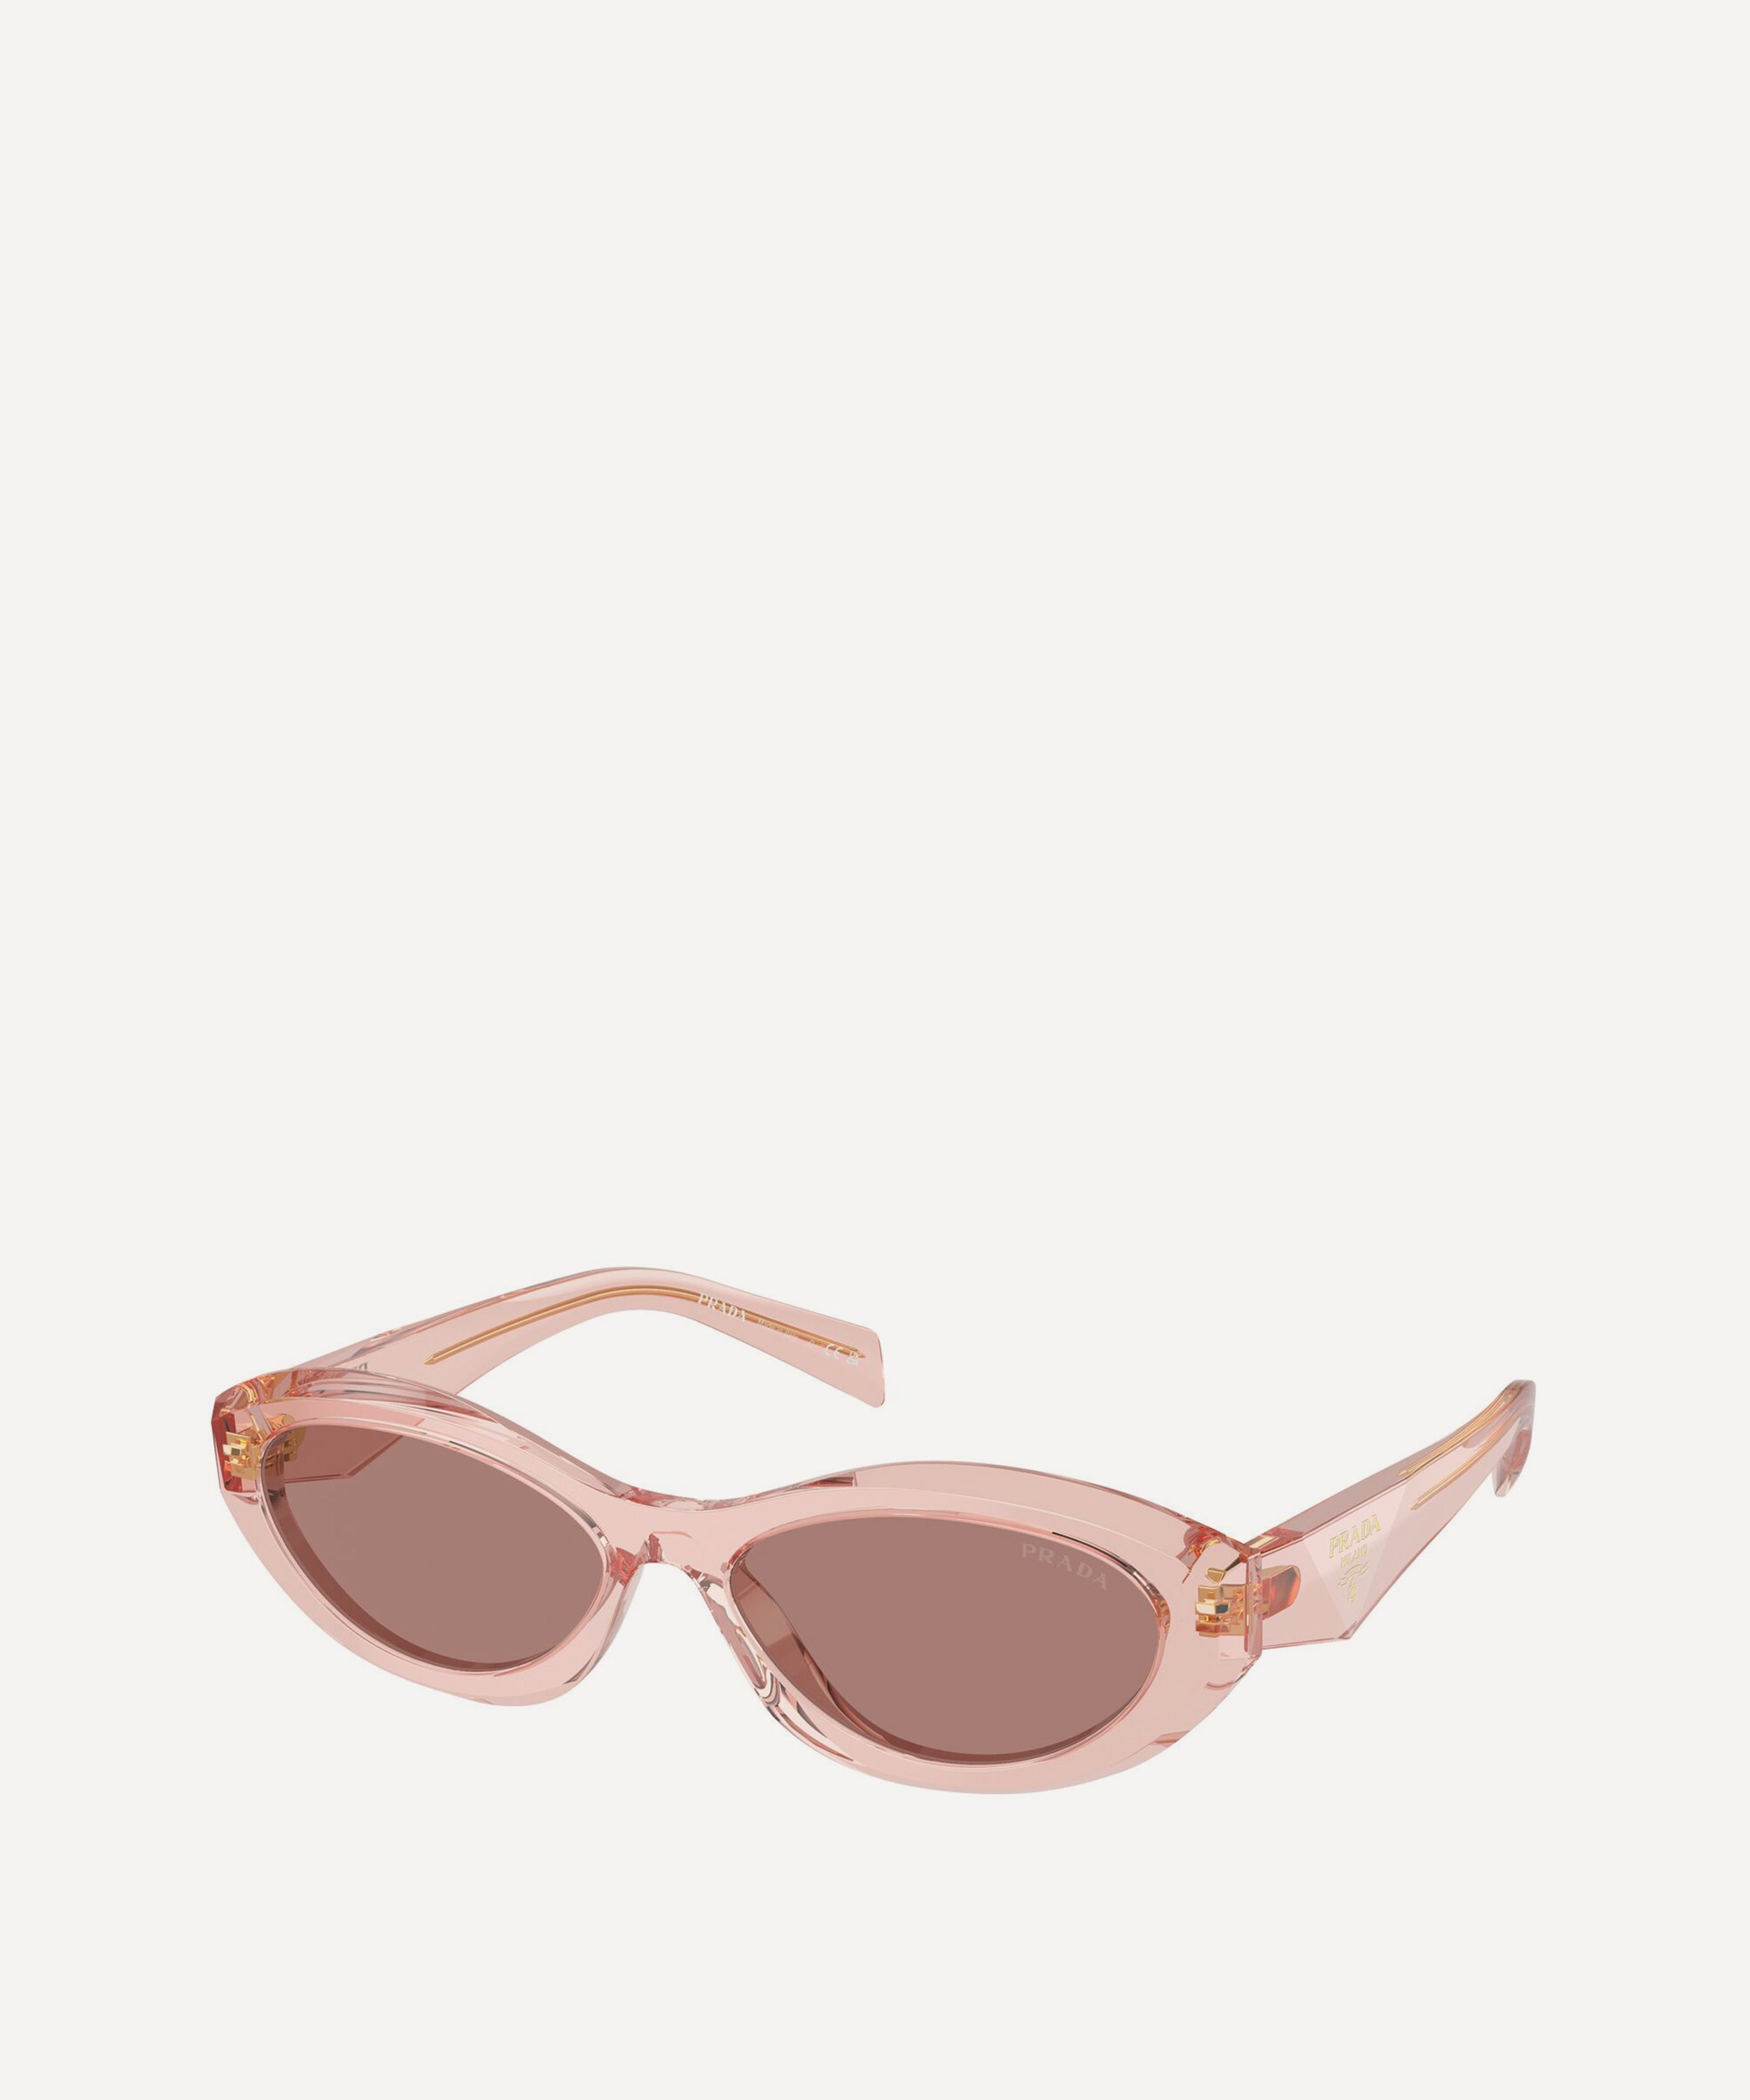 Prada - Oval Sunglasses